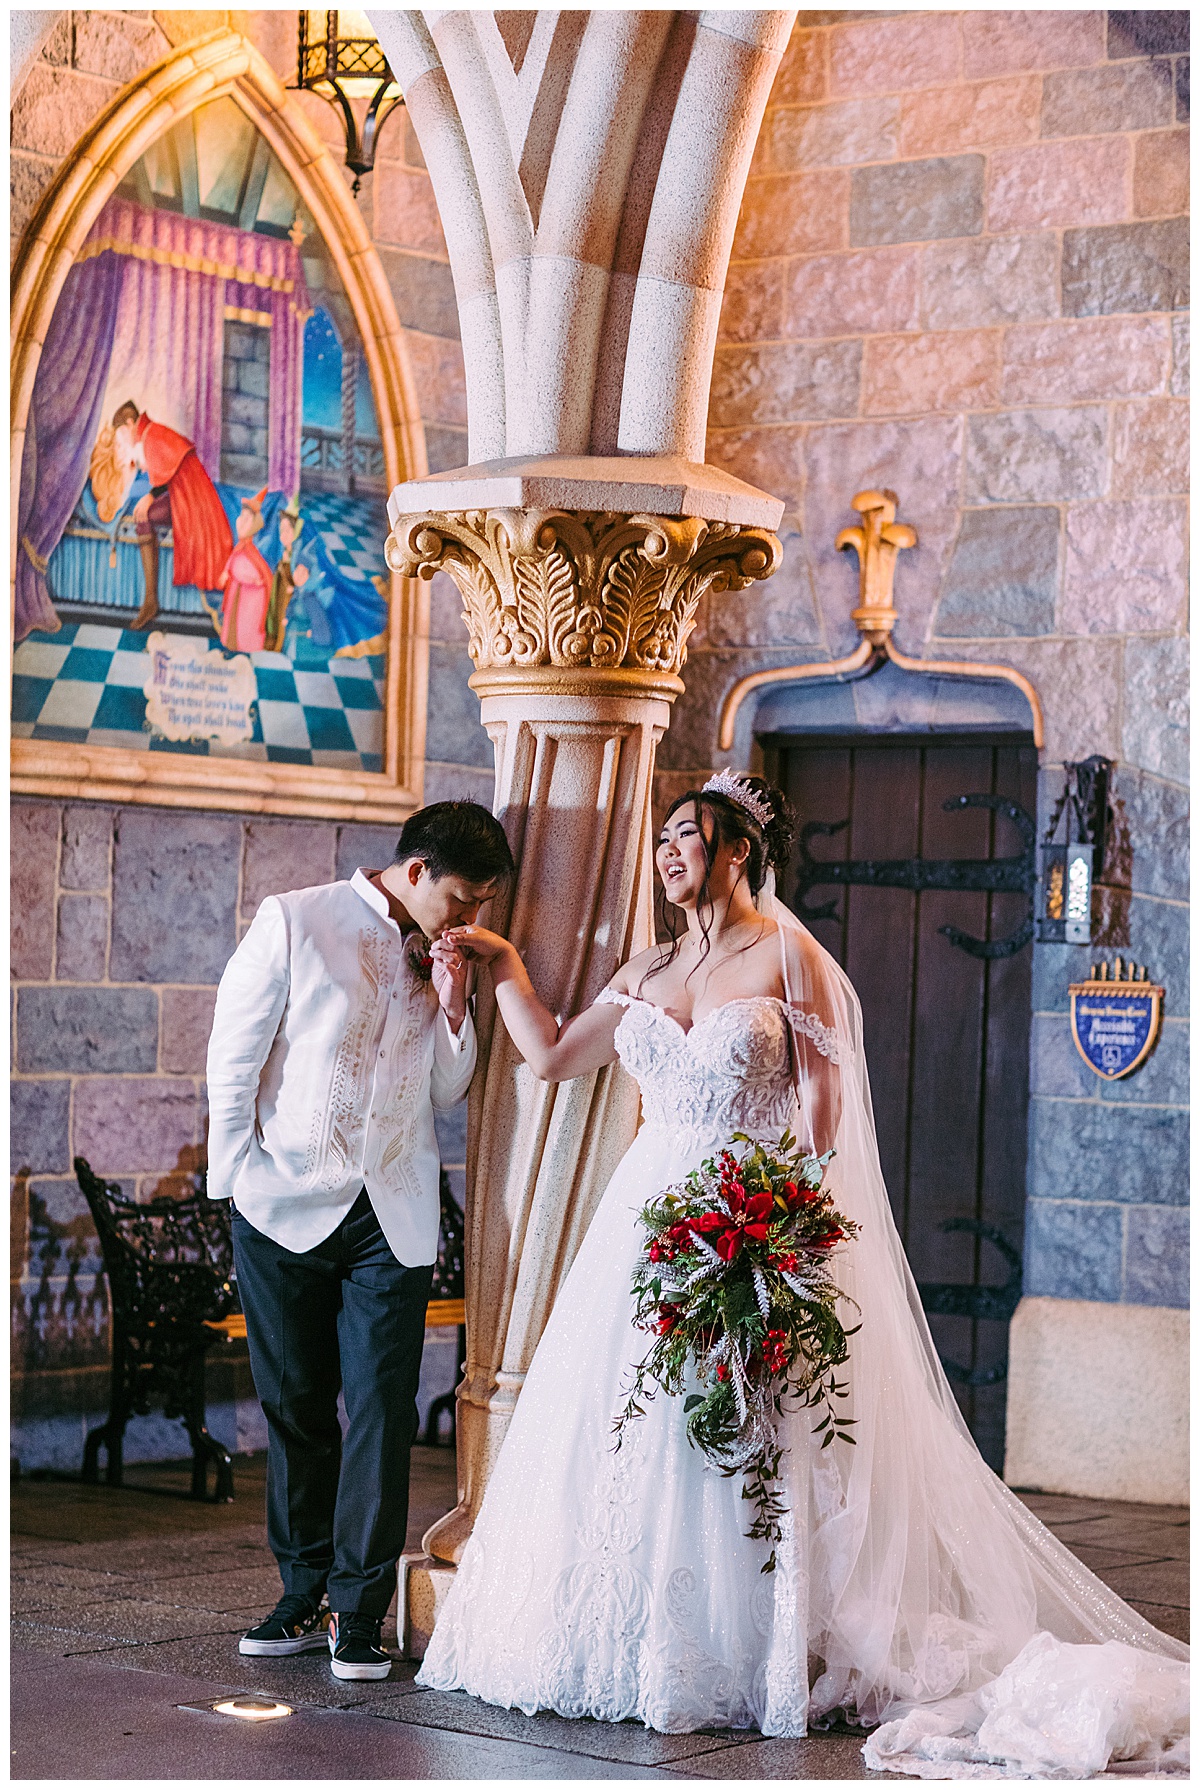 A wedding portrait session at Disneyland arranged through Disney Weddings